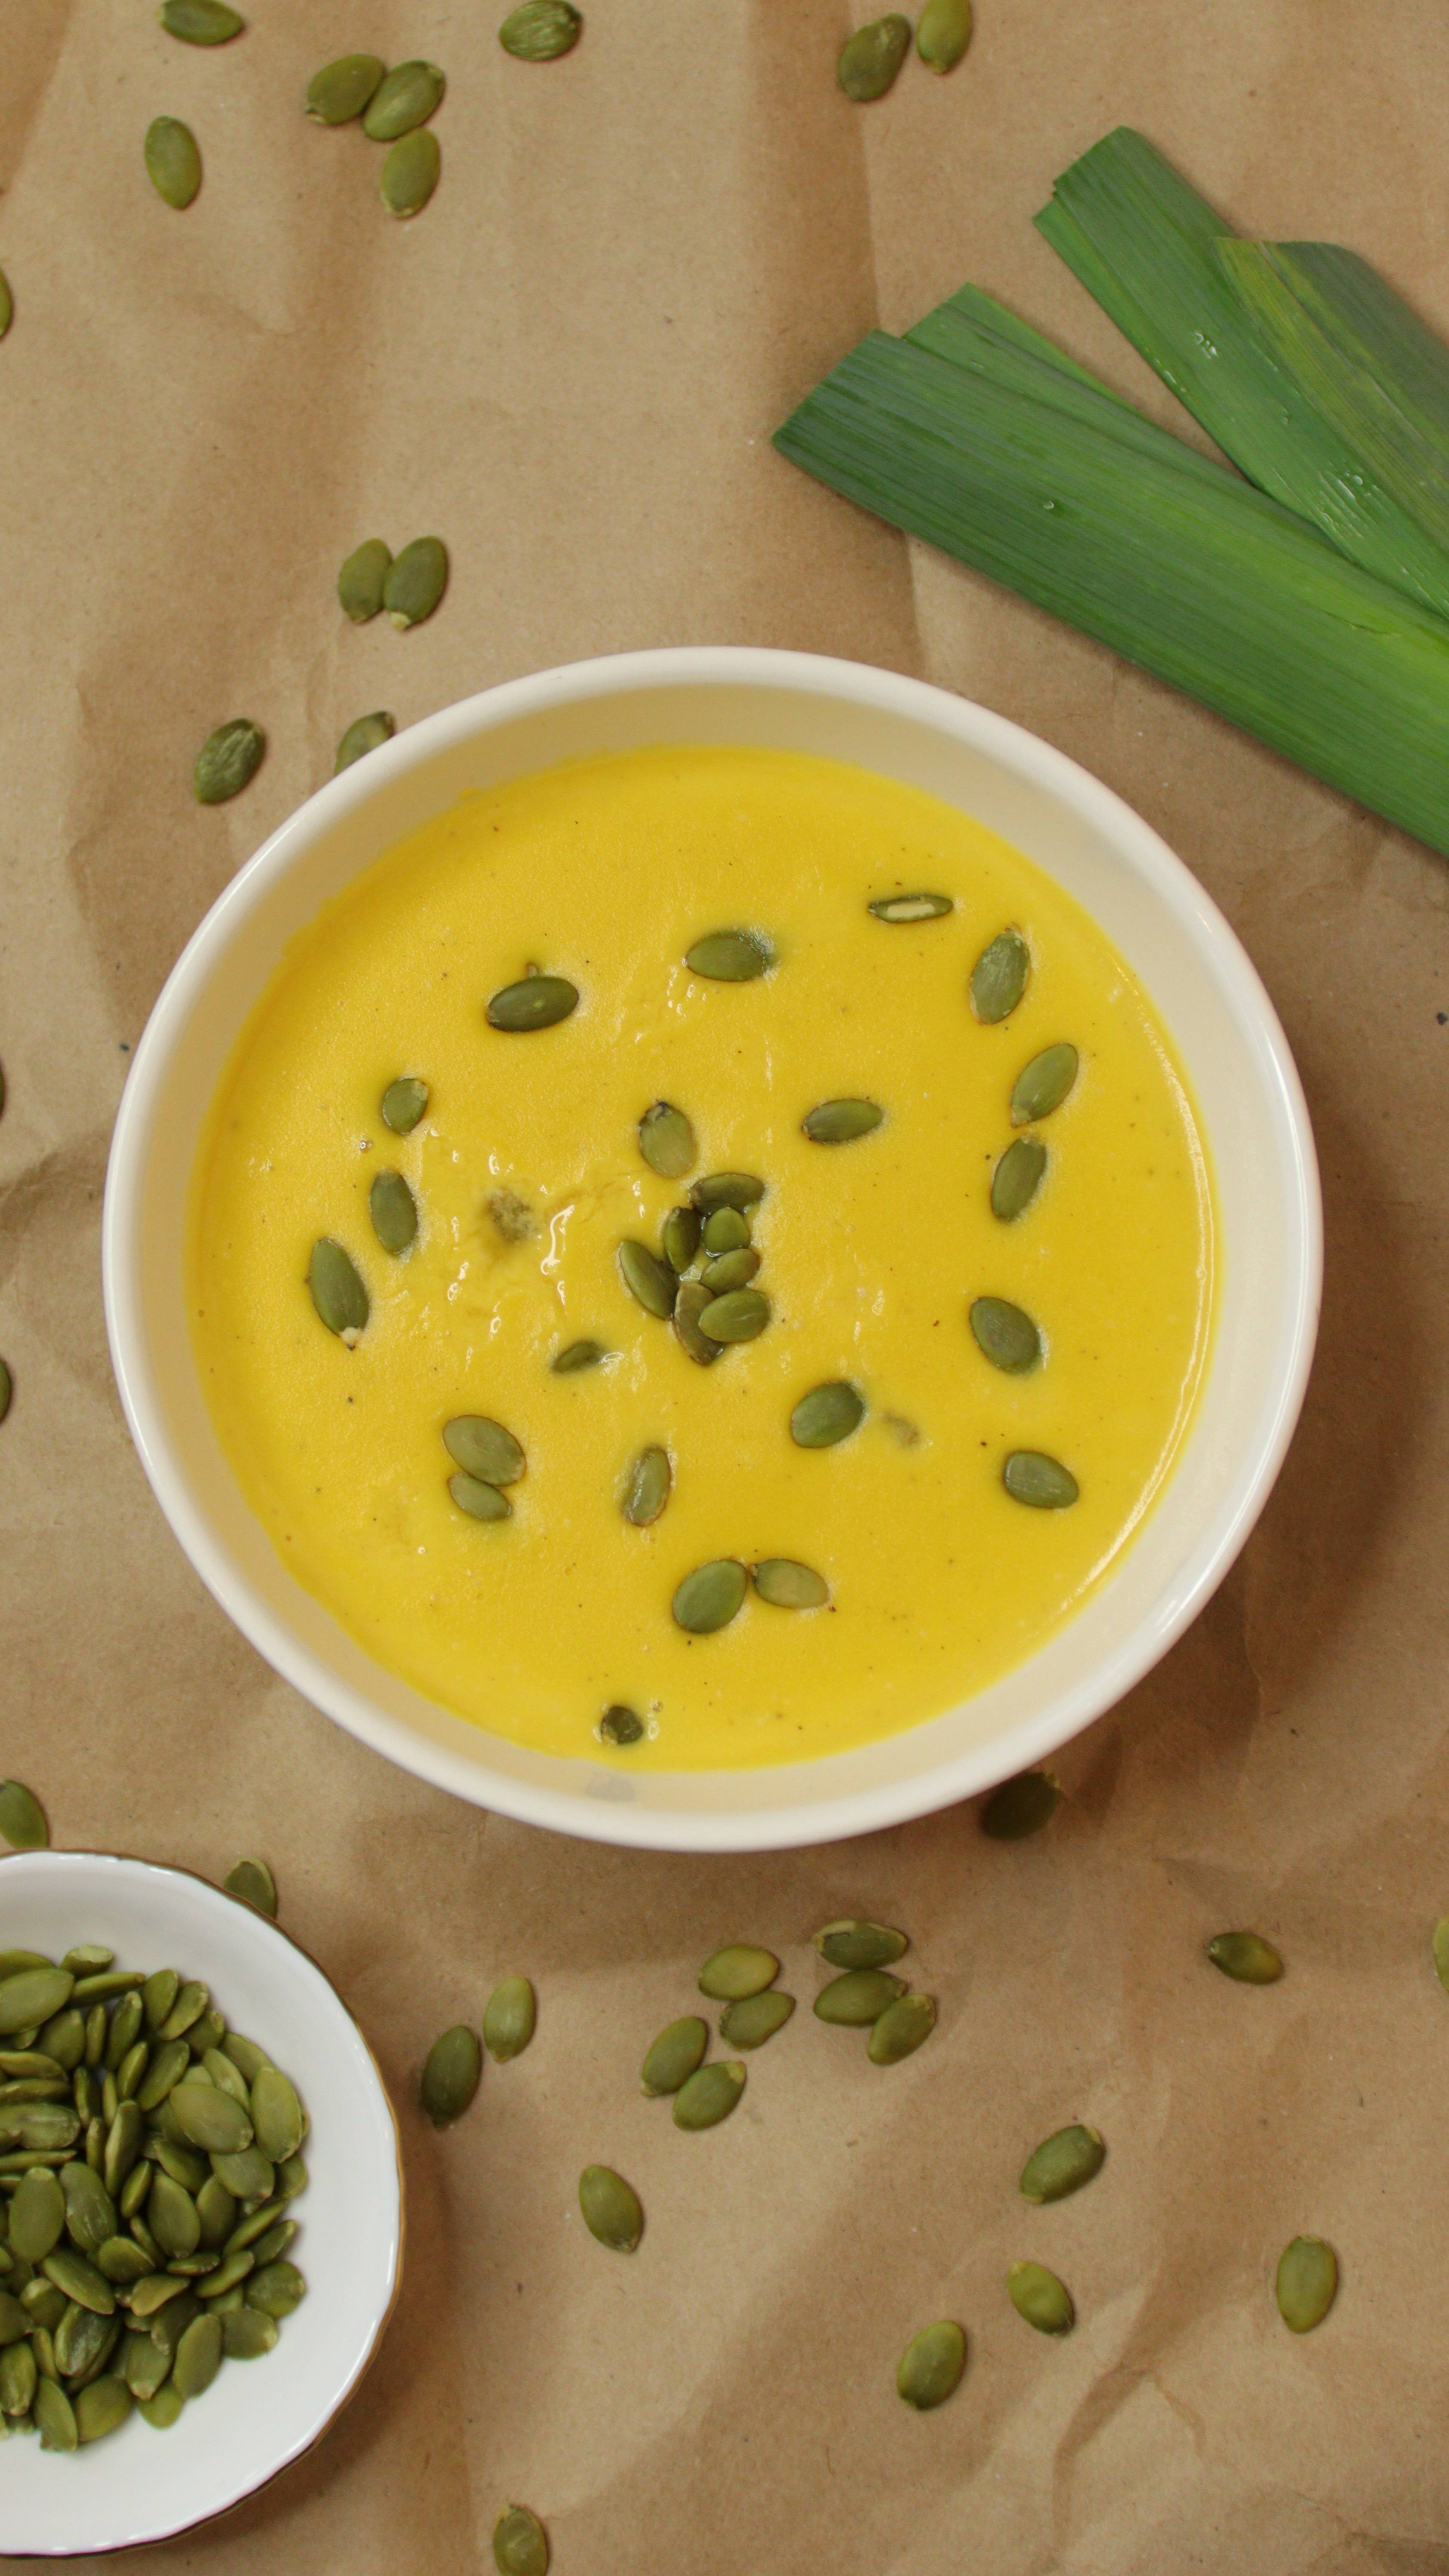 Нежный крем-суп из тыквы (с луком-пореем и сливками). Рецепт в описании!